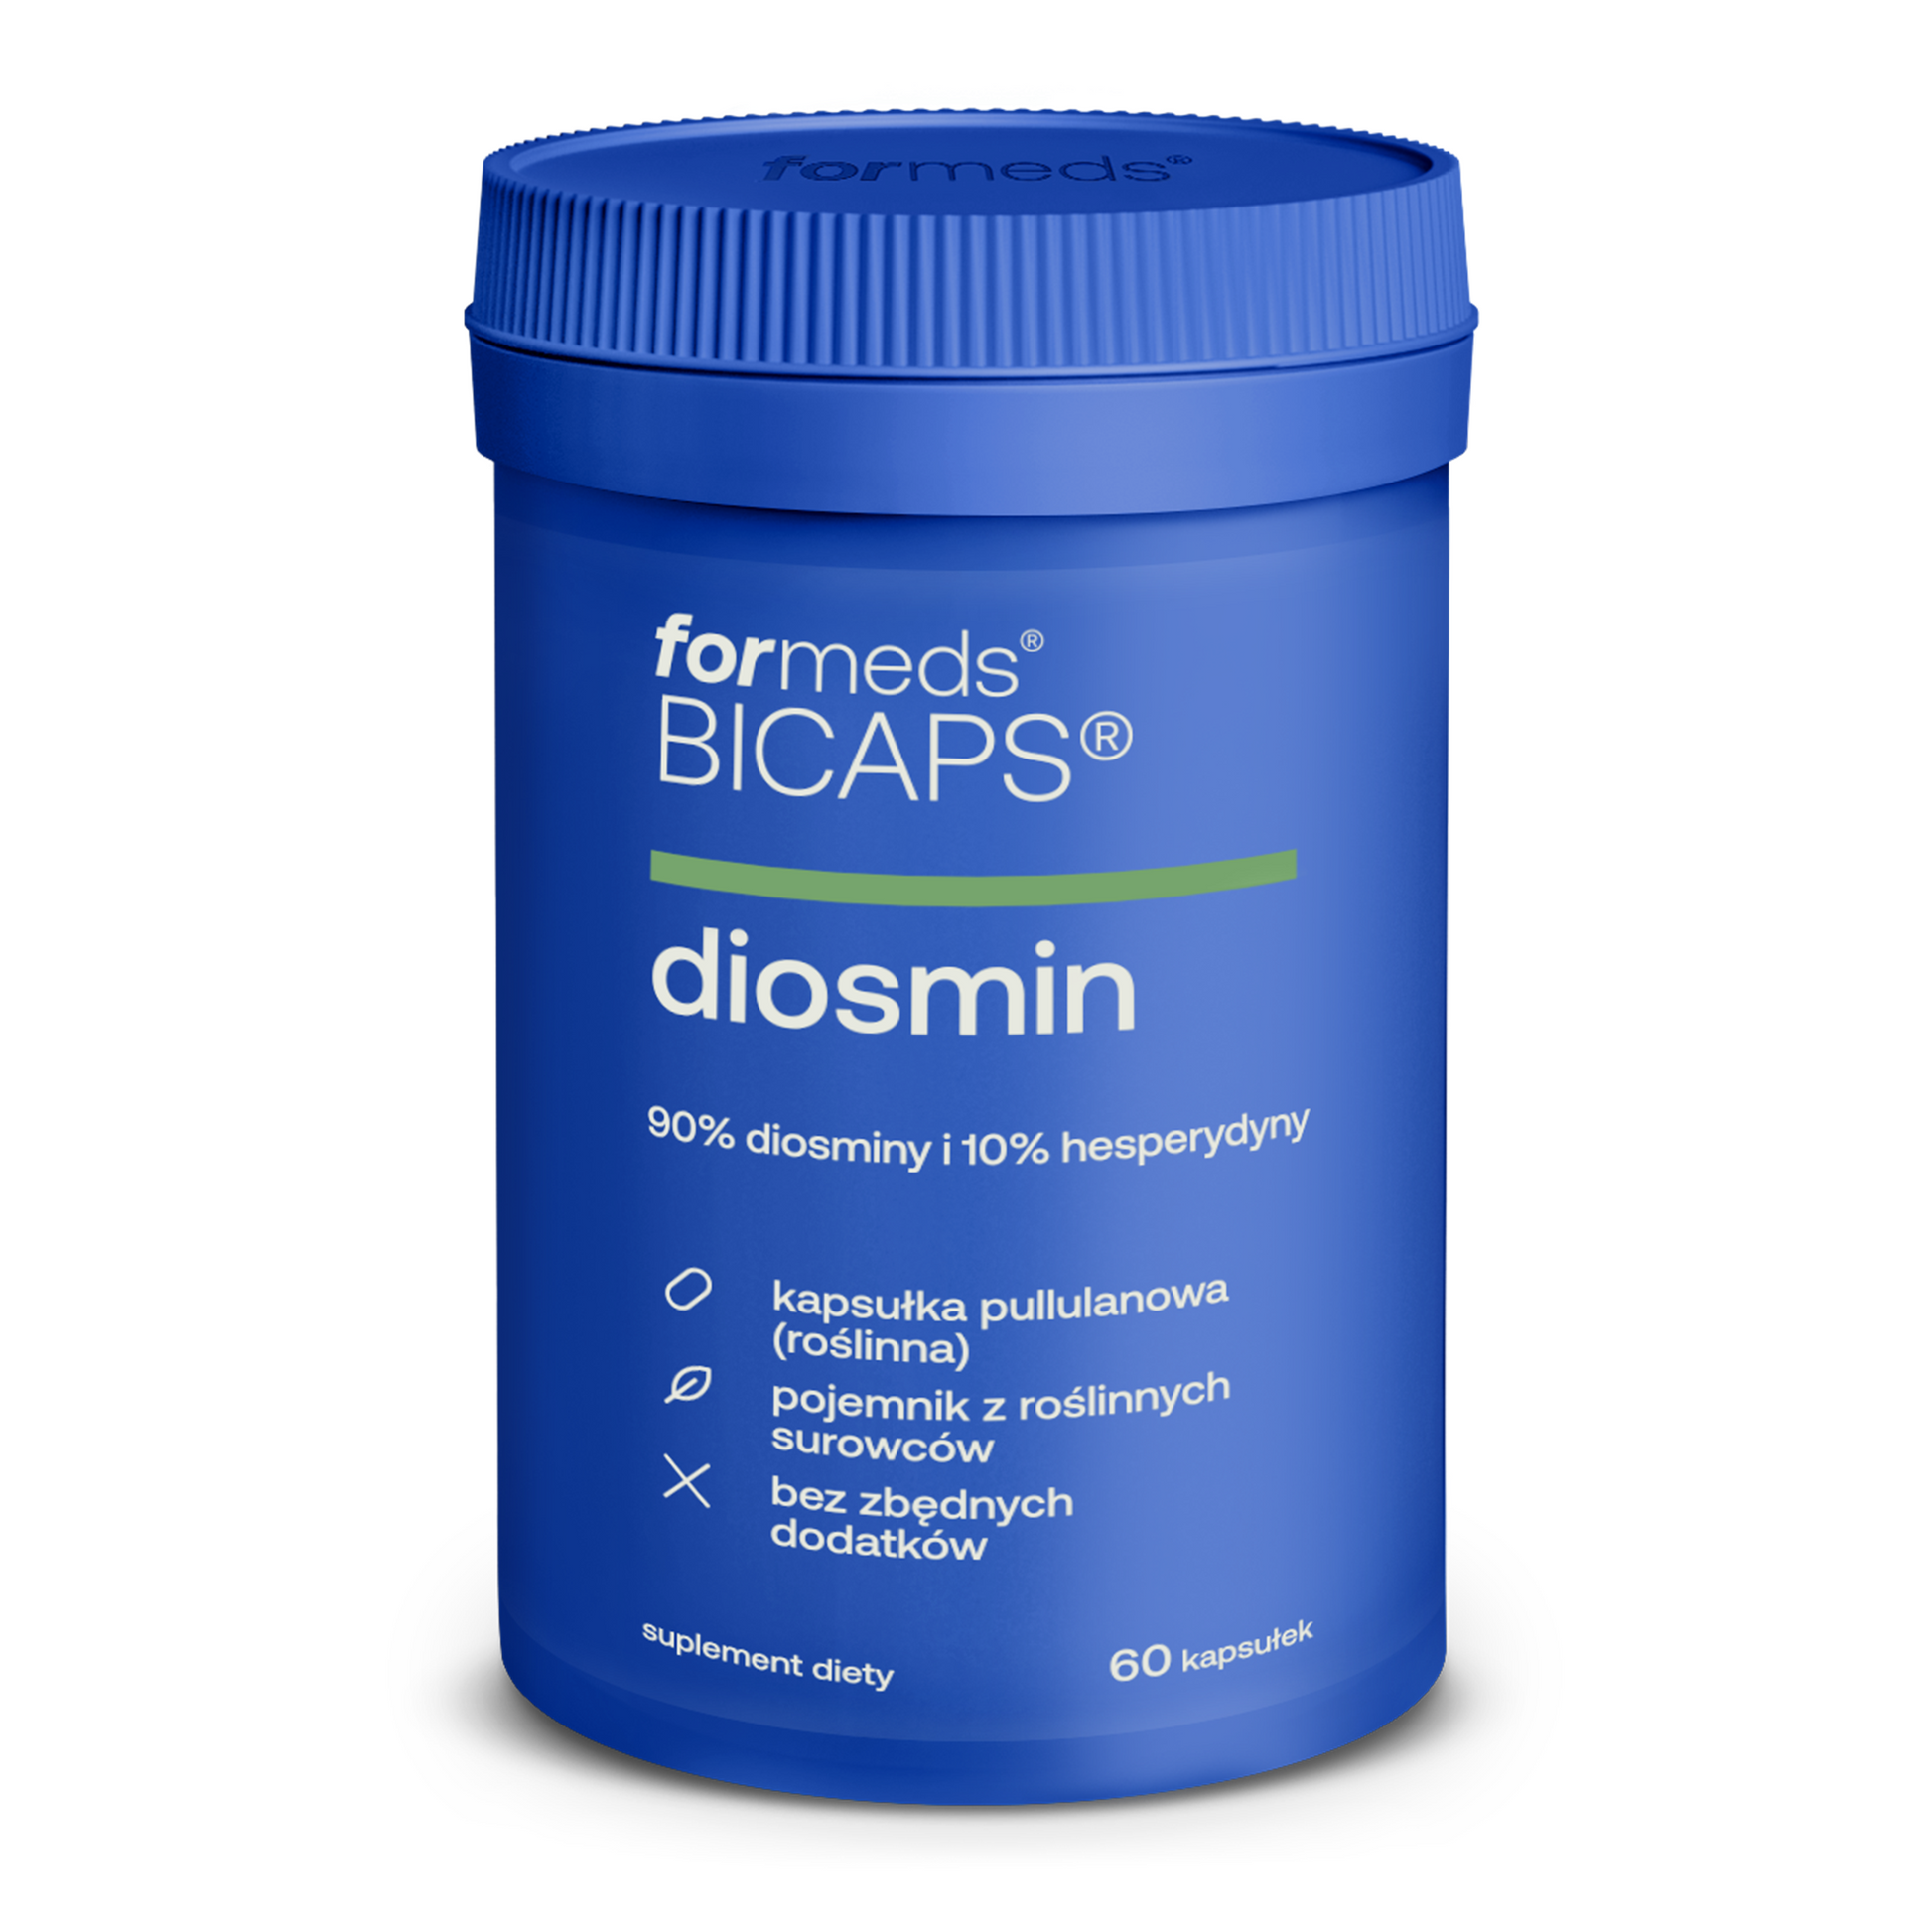 BICAPS Diosmin - kapsułki, tabletki z diosminą i hesperydyną